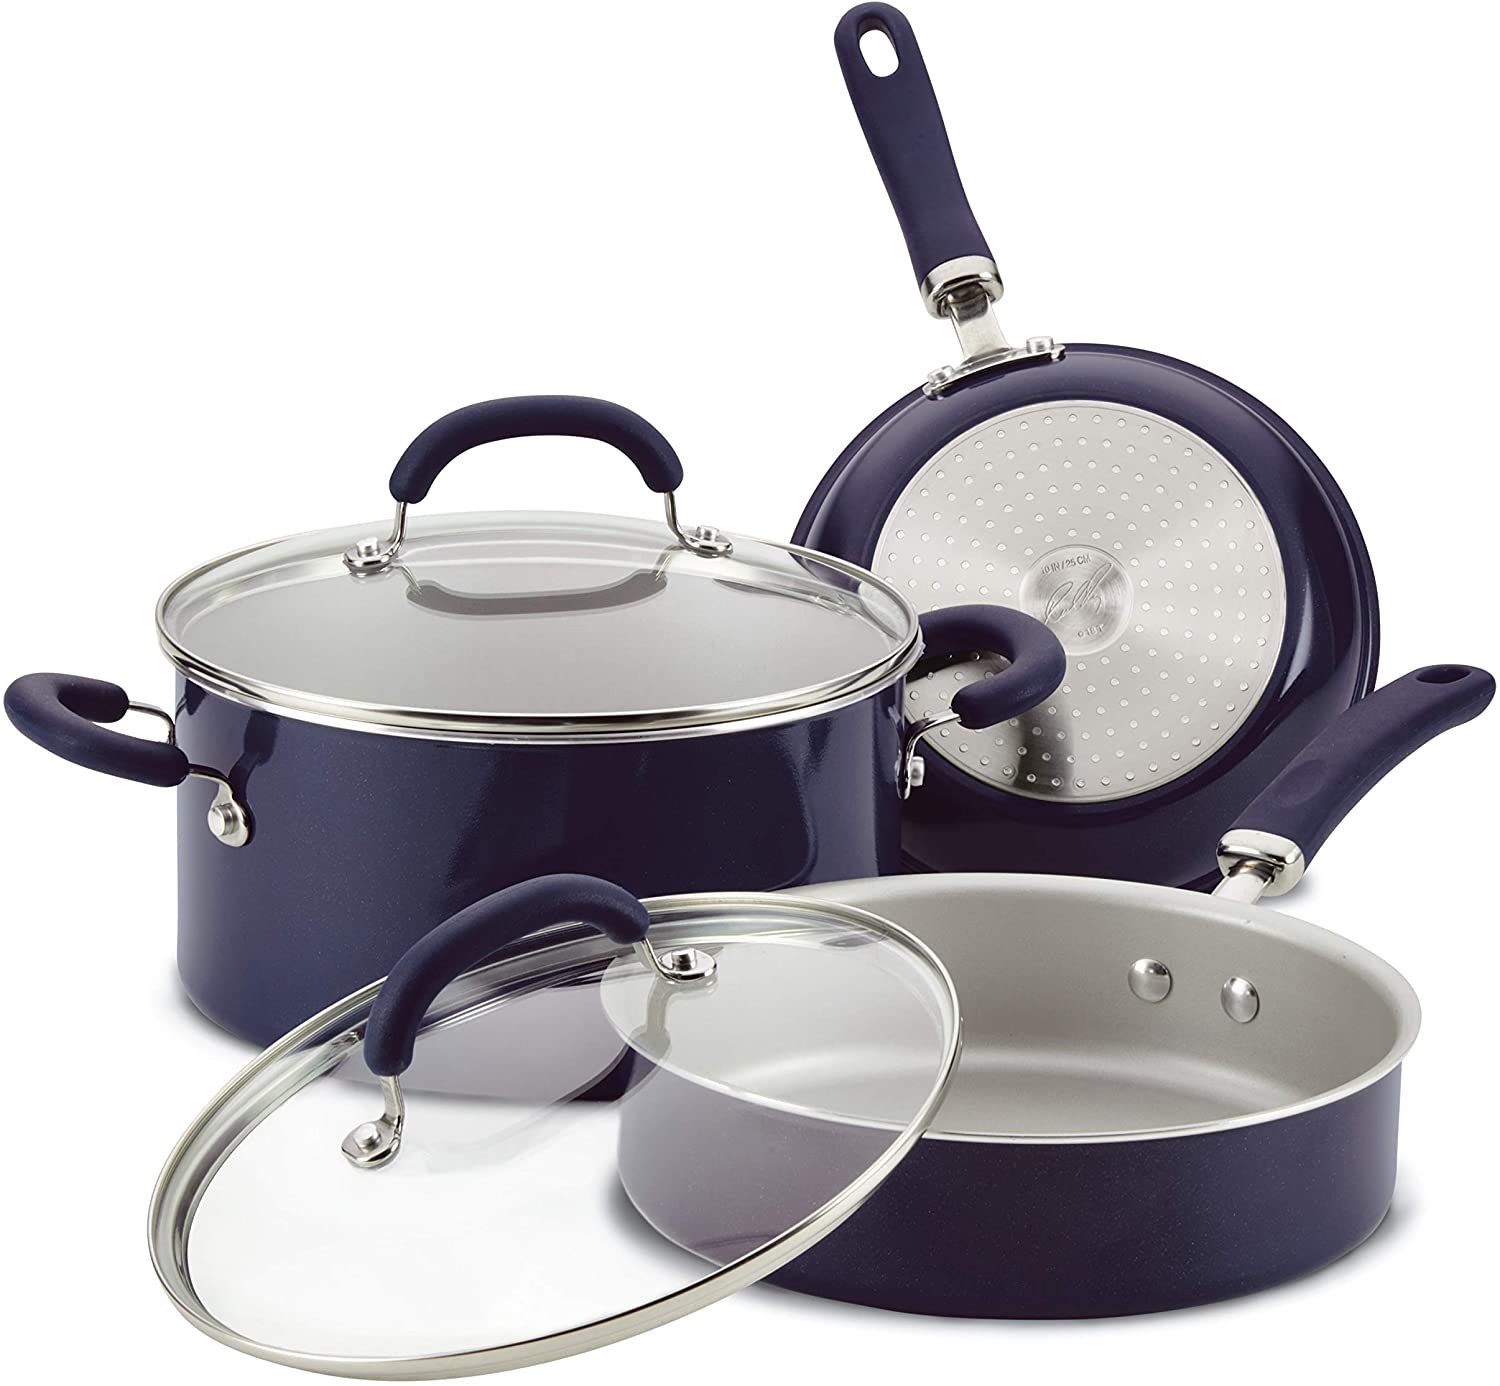 87 Pots n Pans ideas  pots and pans, cookware set, cookware sets